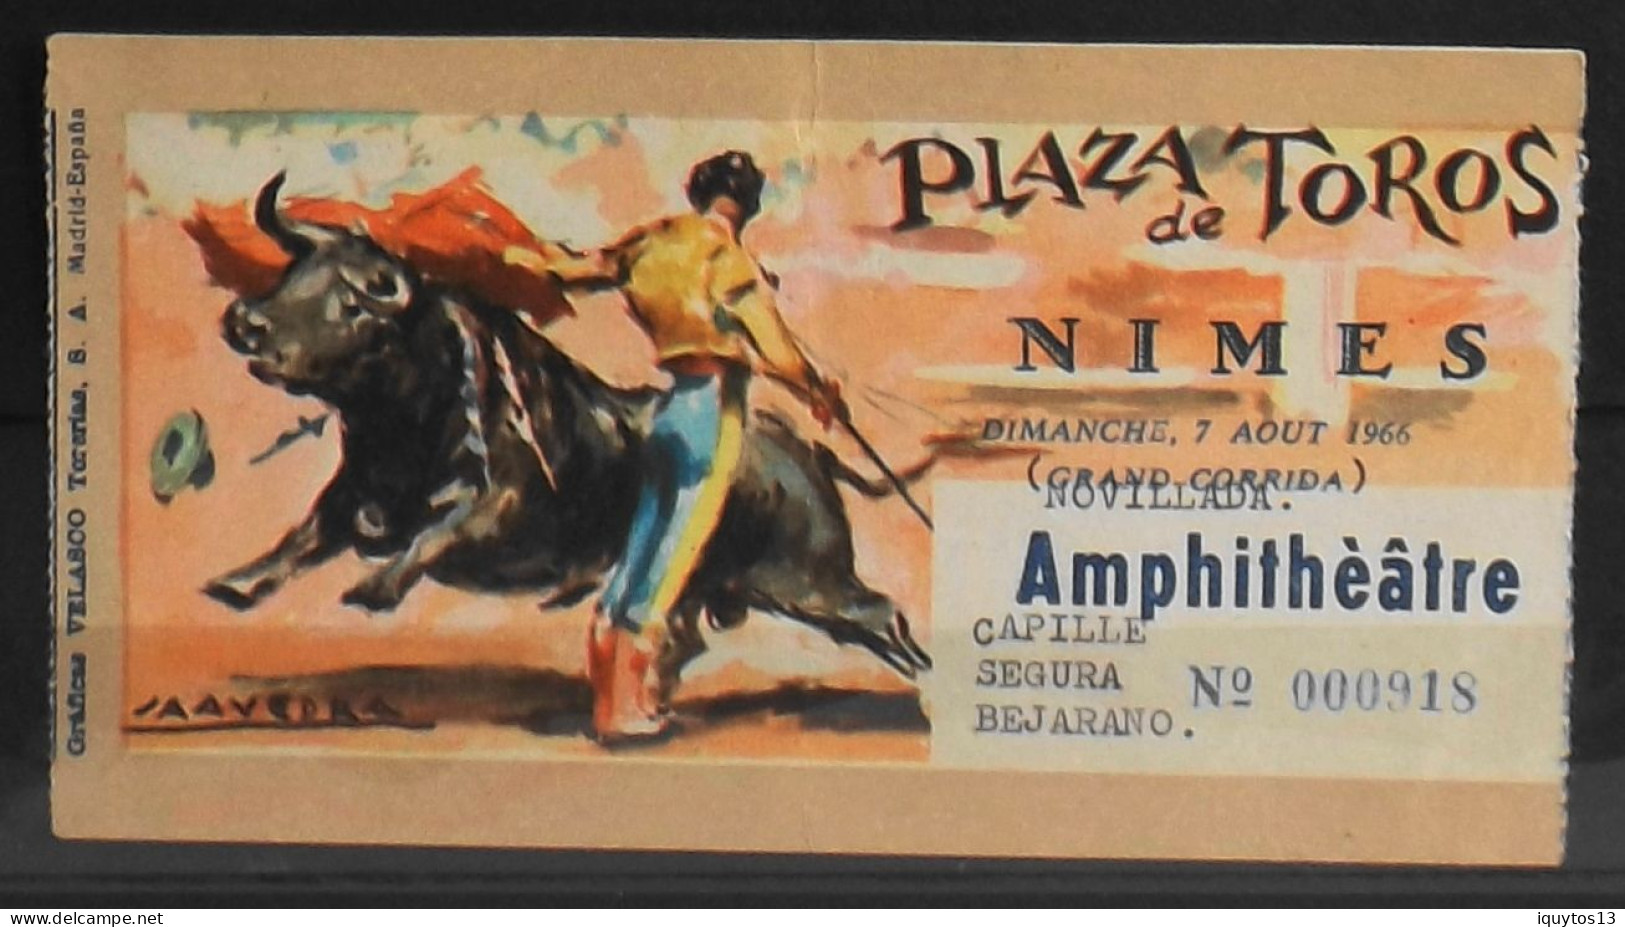 BILLET - NOVILLADA - Plaza De Toros - NIMES Dimanche 7 Août 1966 - Amphitéâtre - Les Noms Des Toreros Sont Indiqués - BE - Biglietti D'ingresso